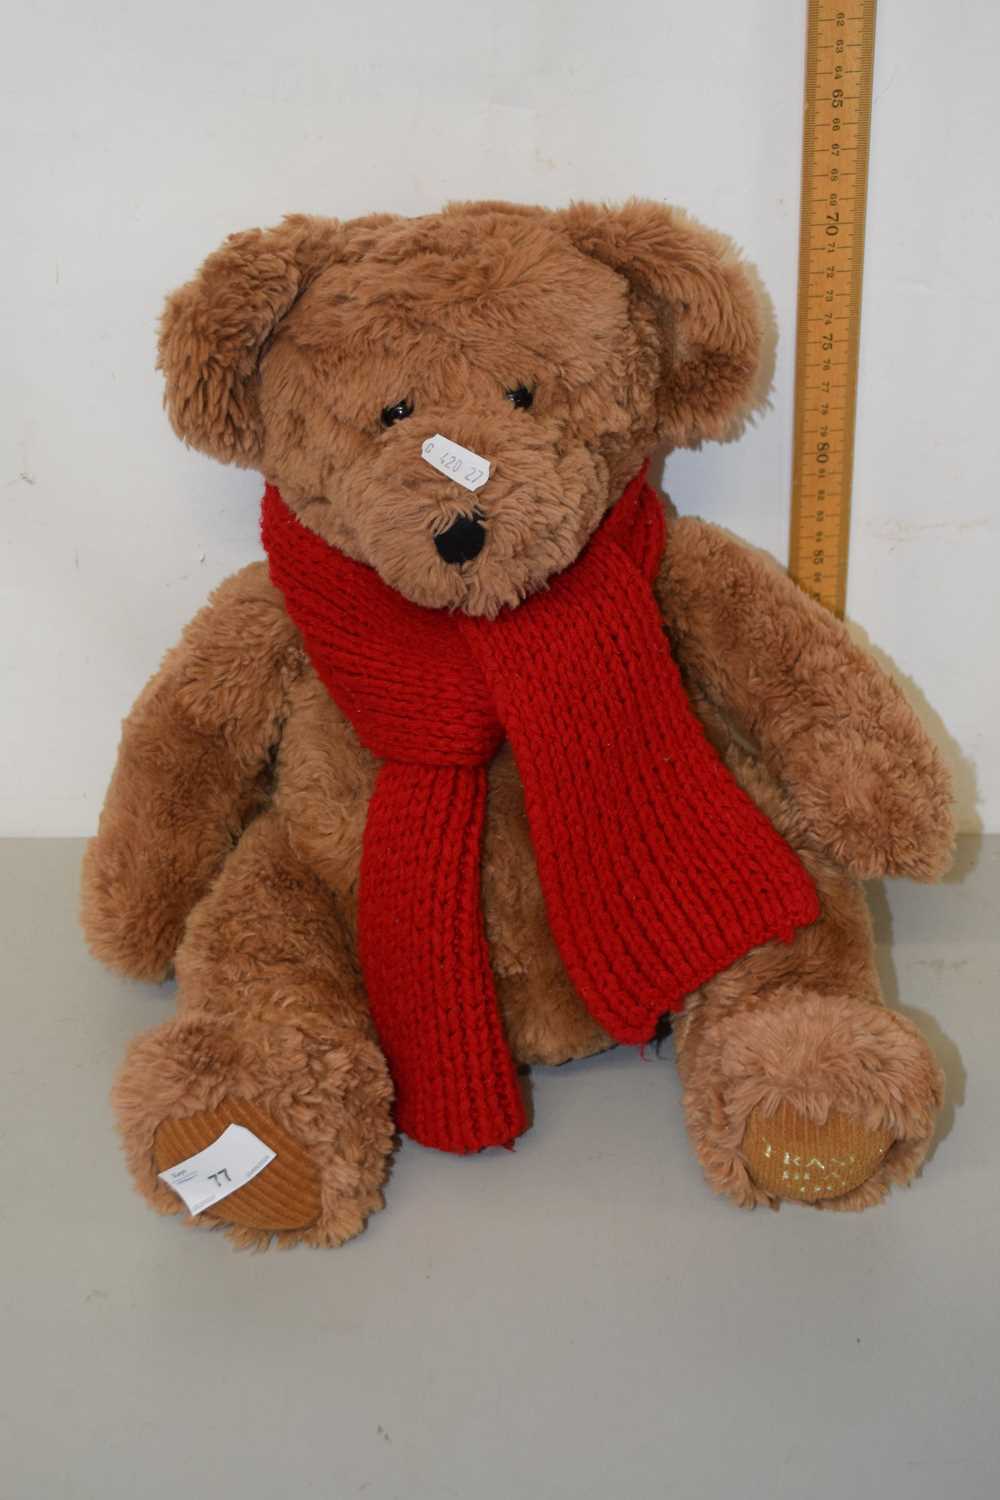 Fraser teddy bear 2002 model